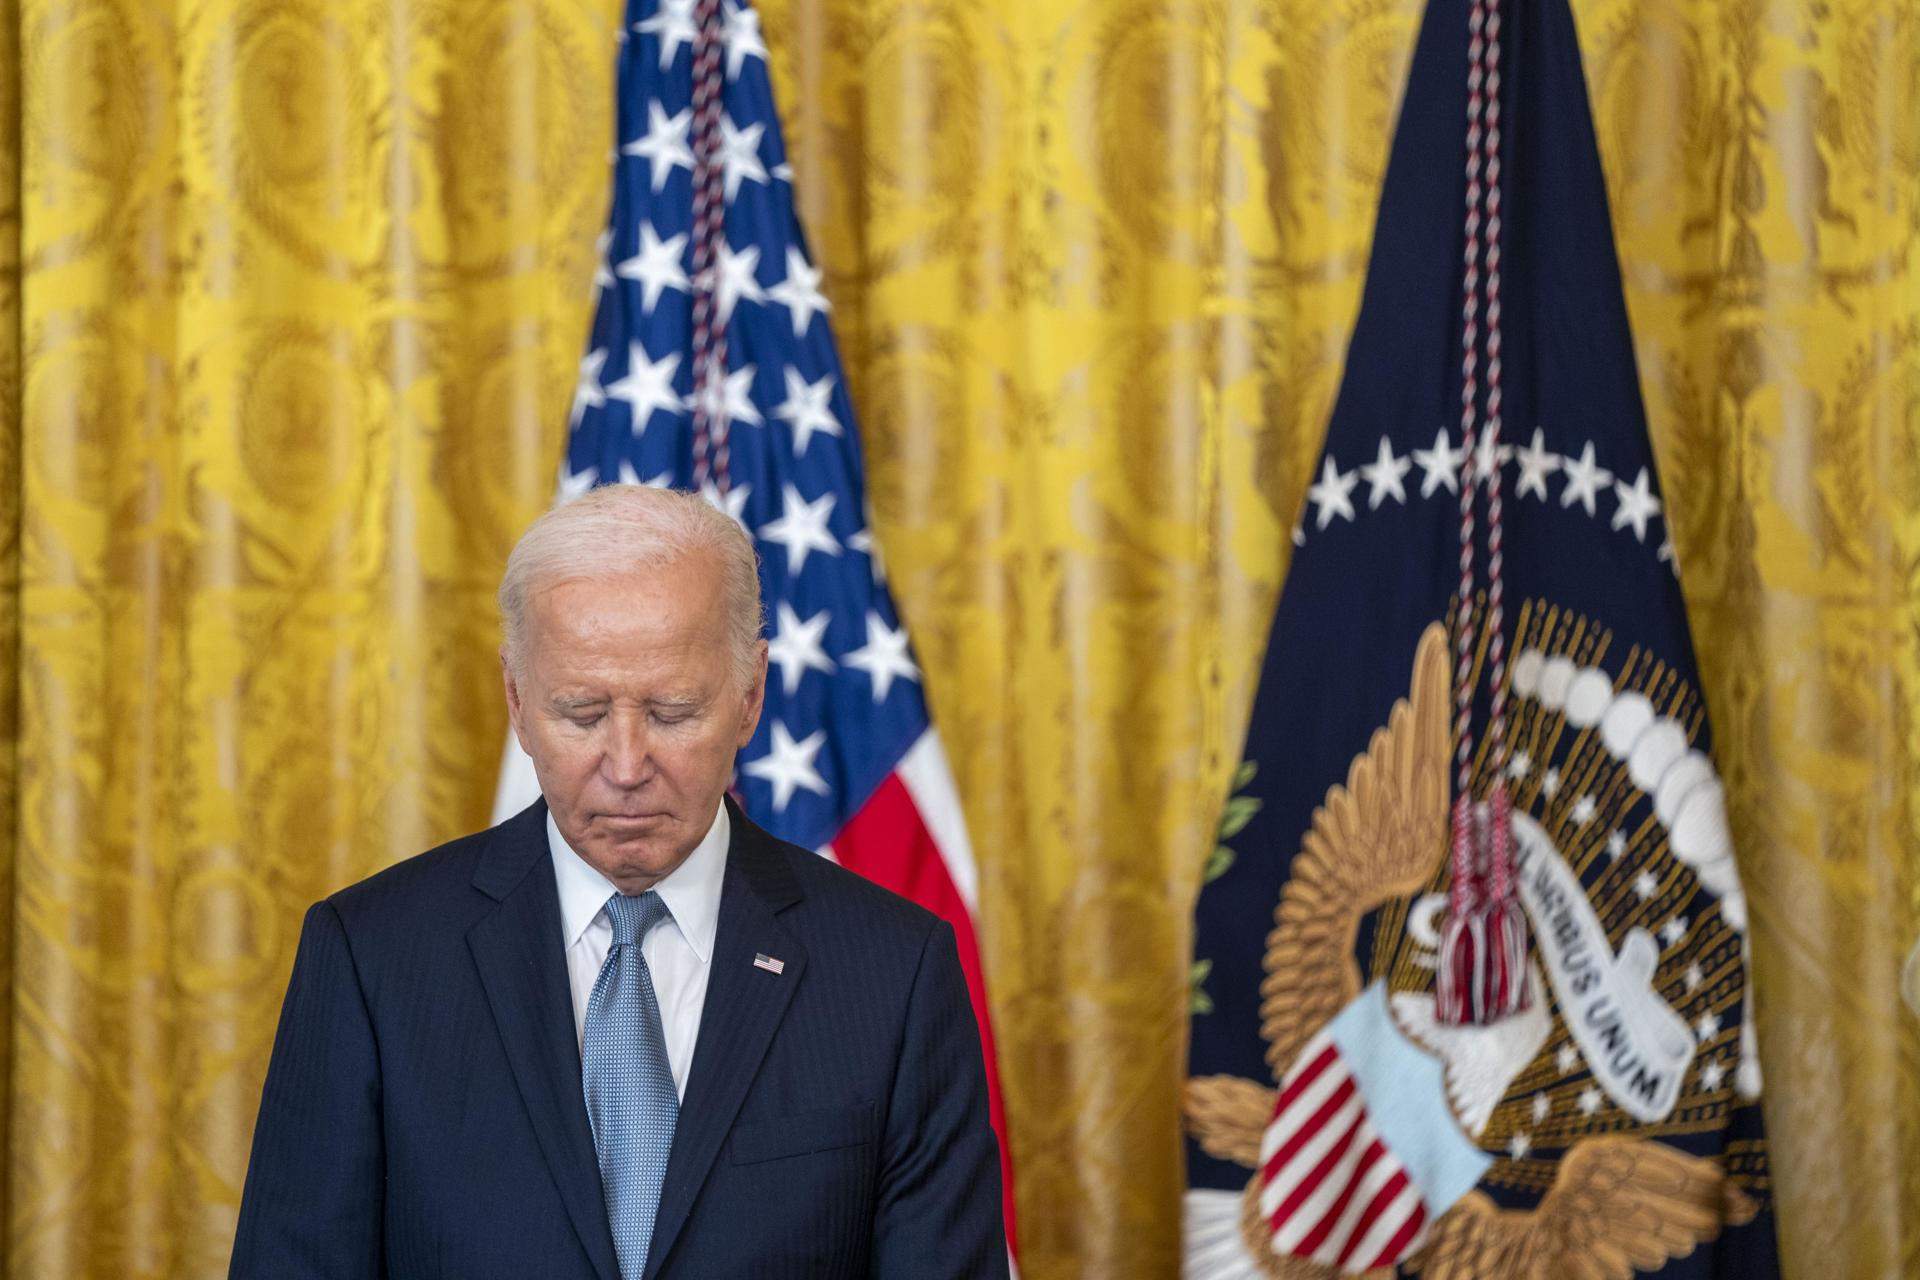 Biden afirma que solo abandonará la carrera electoral si baja "el Señor todopoderoso" y se lo pide